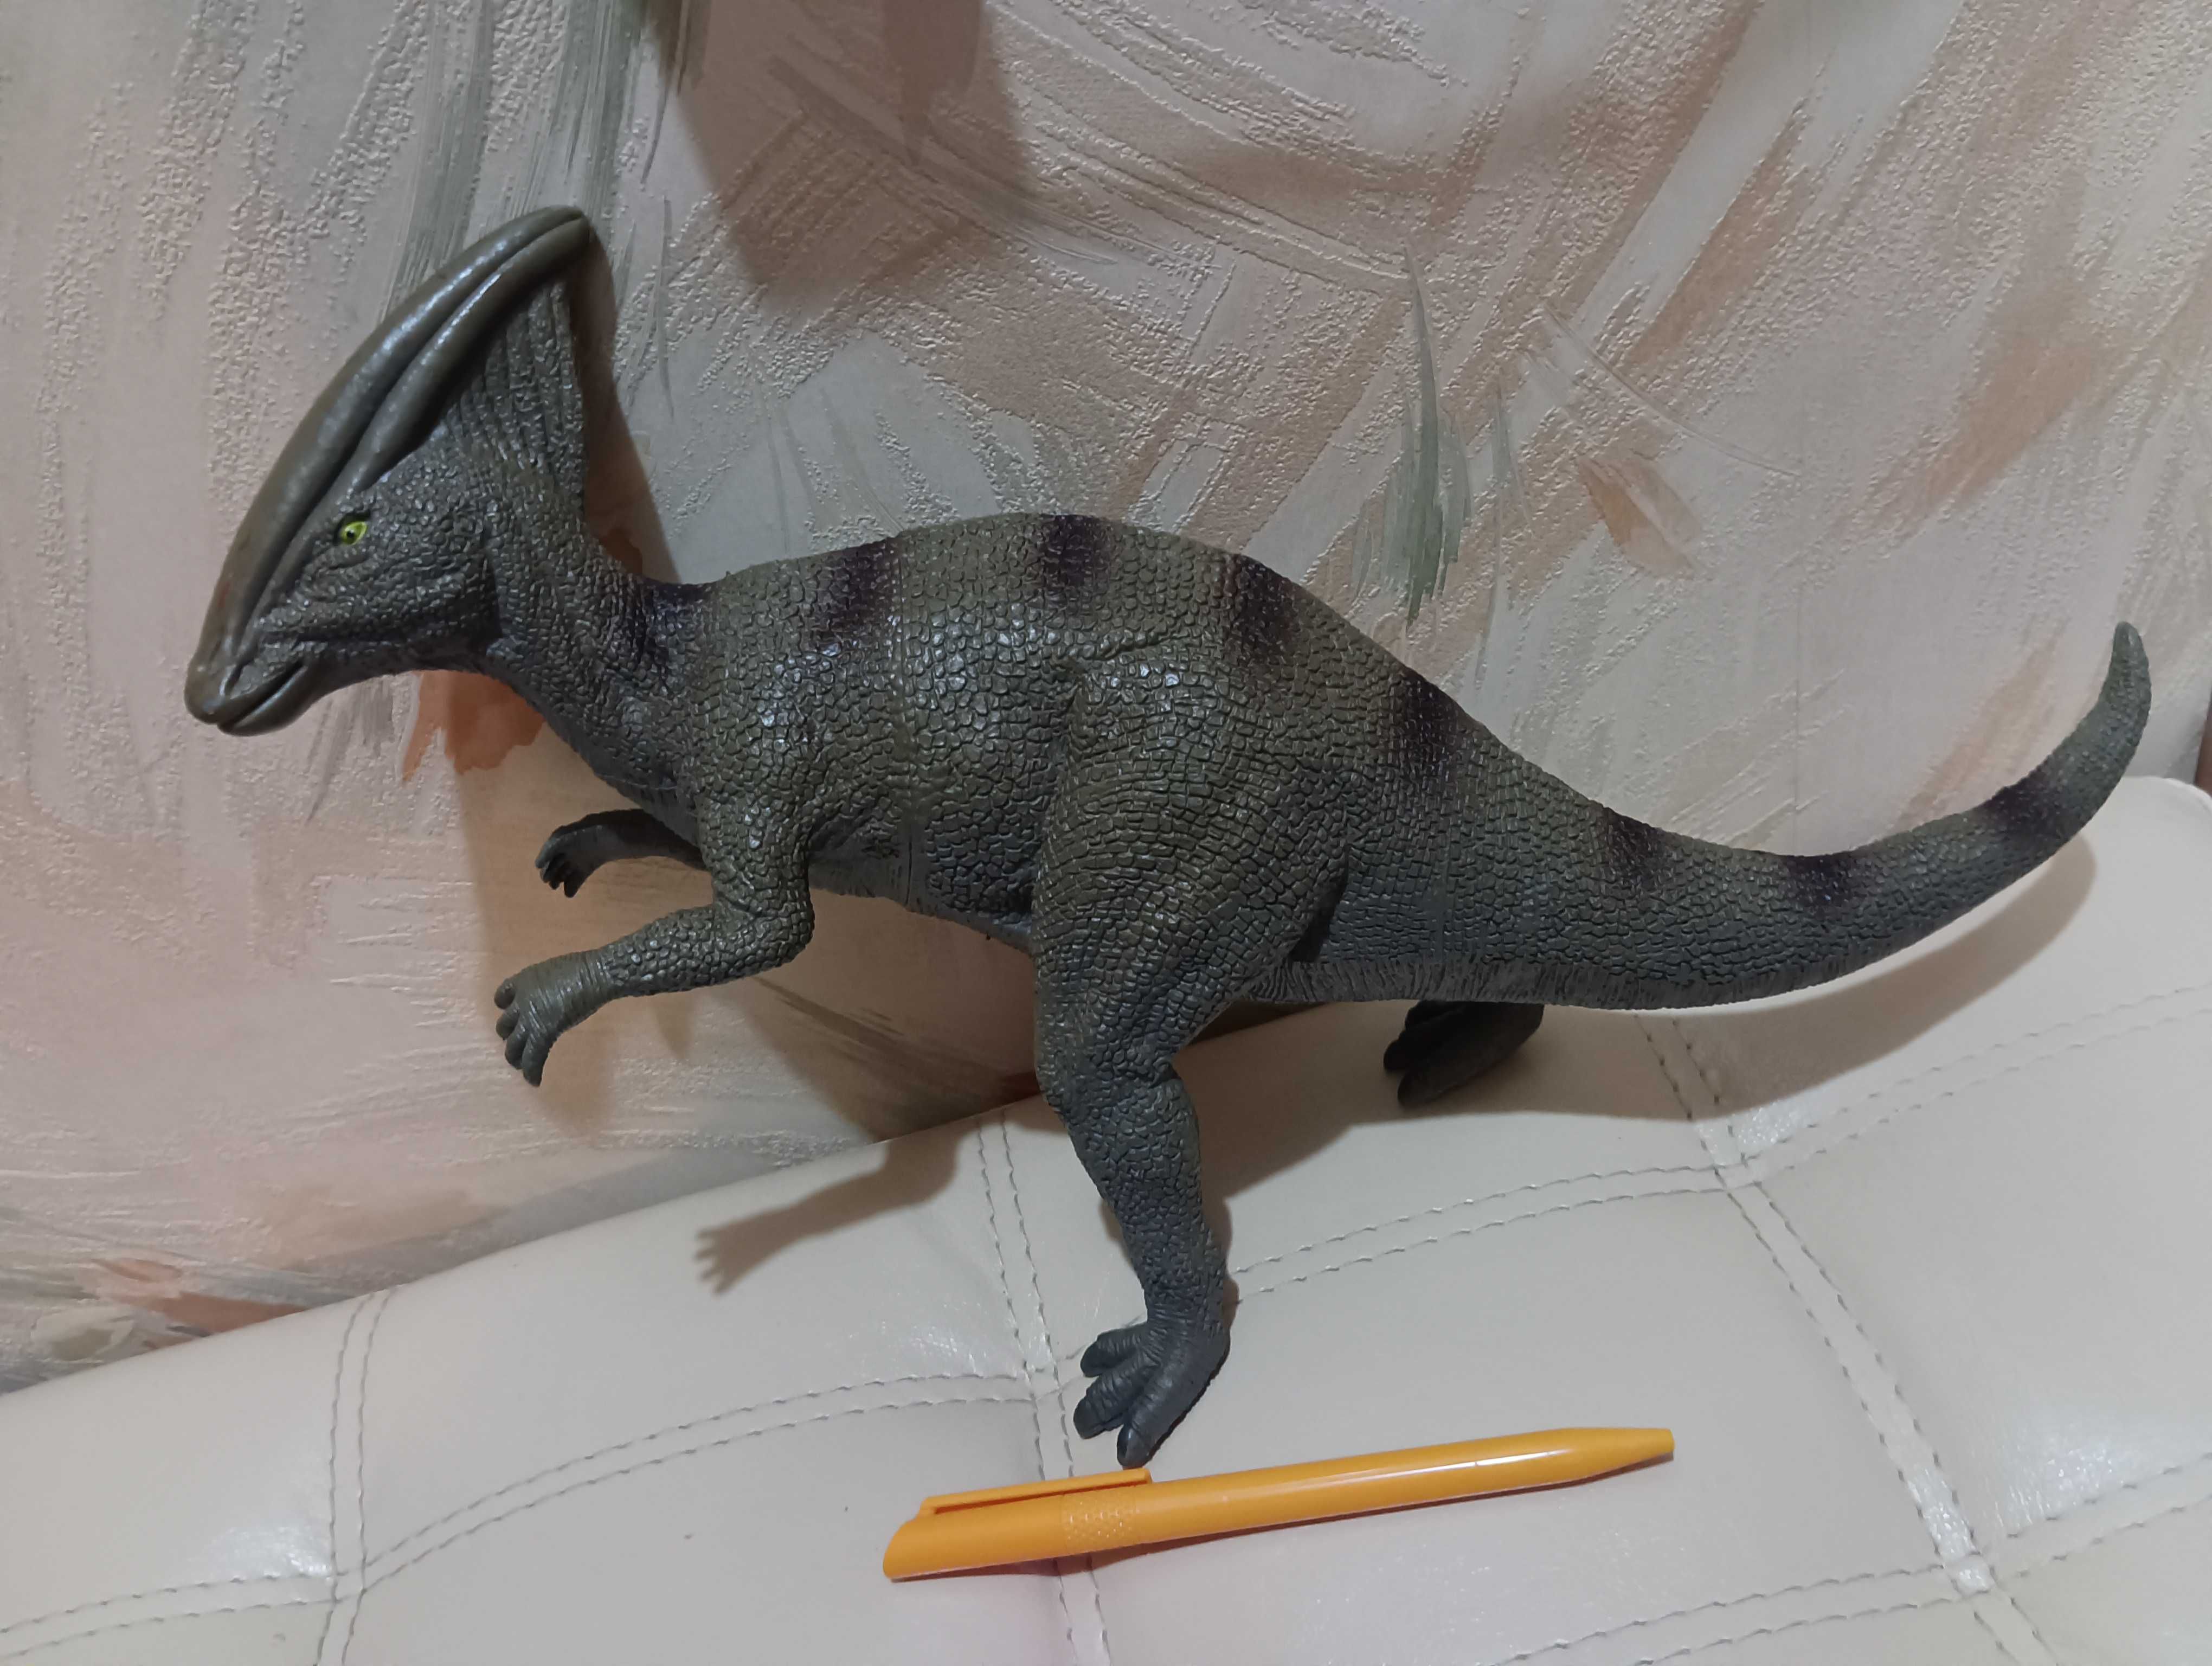 Продам игрушку динозавр